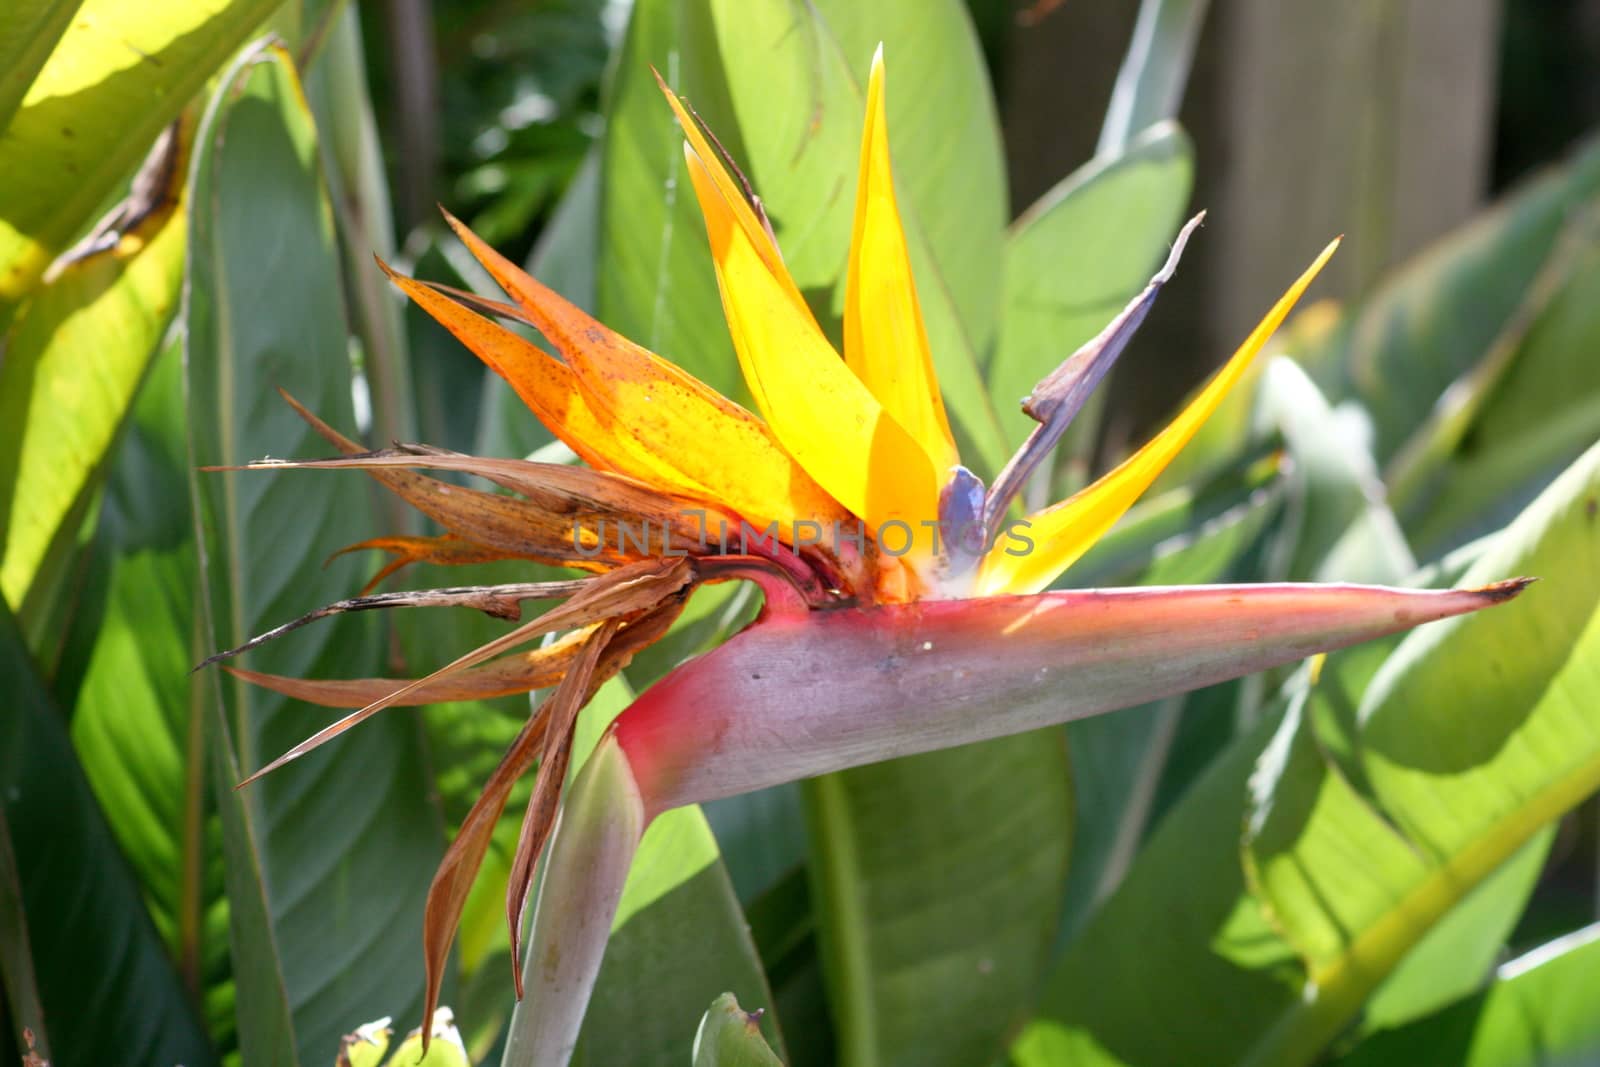 A beautiful bird of paradise flower (Strelitzia reginae)